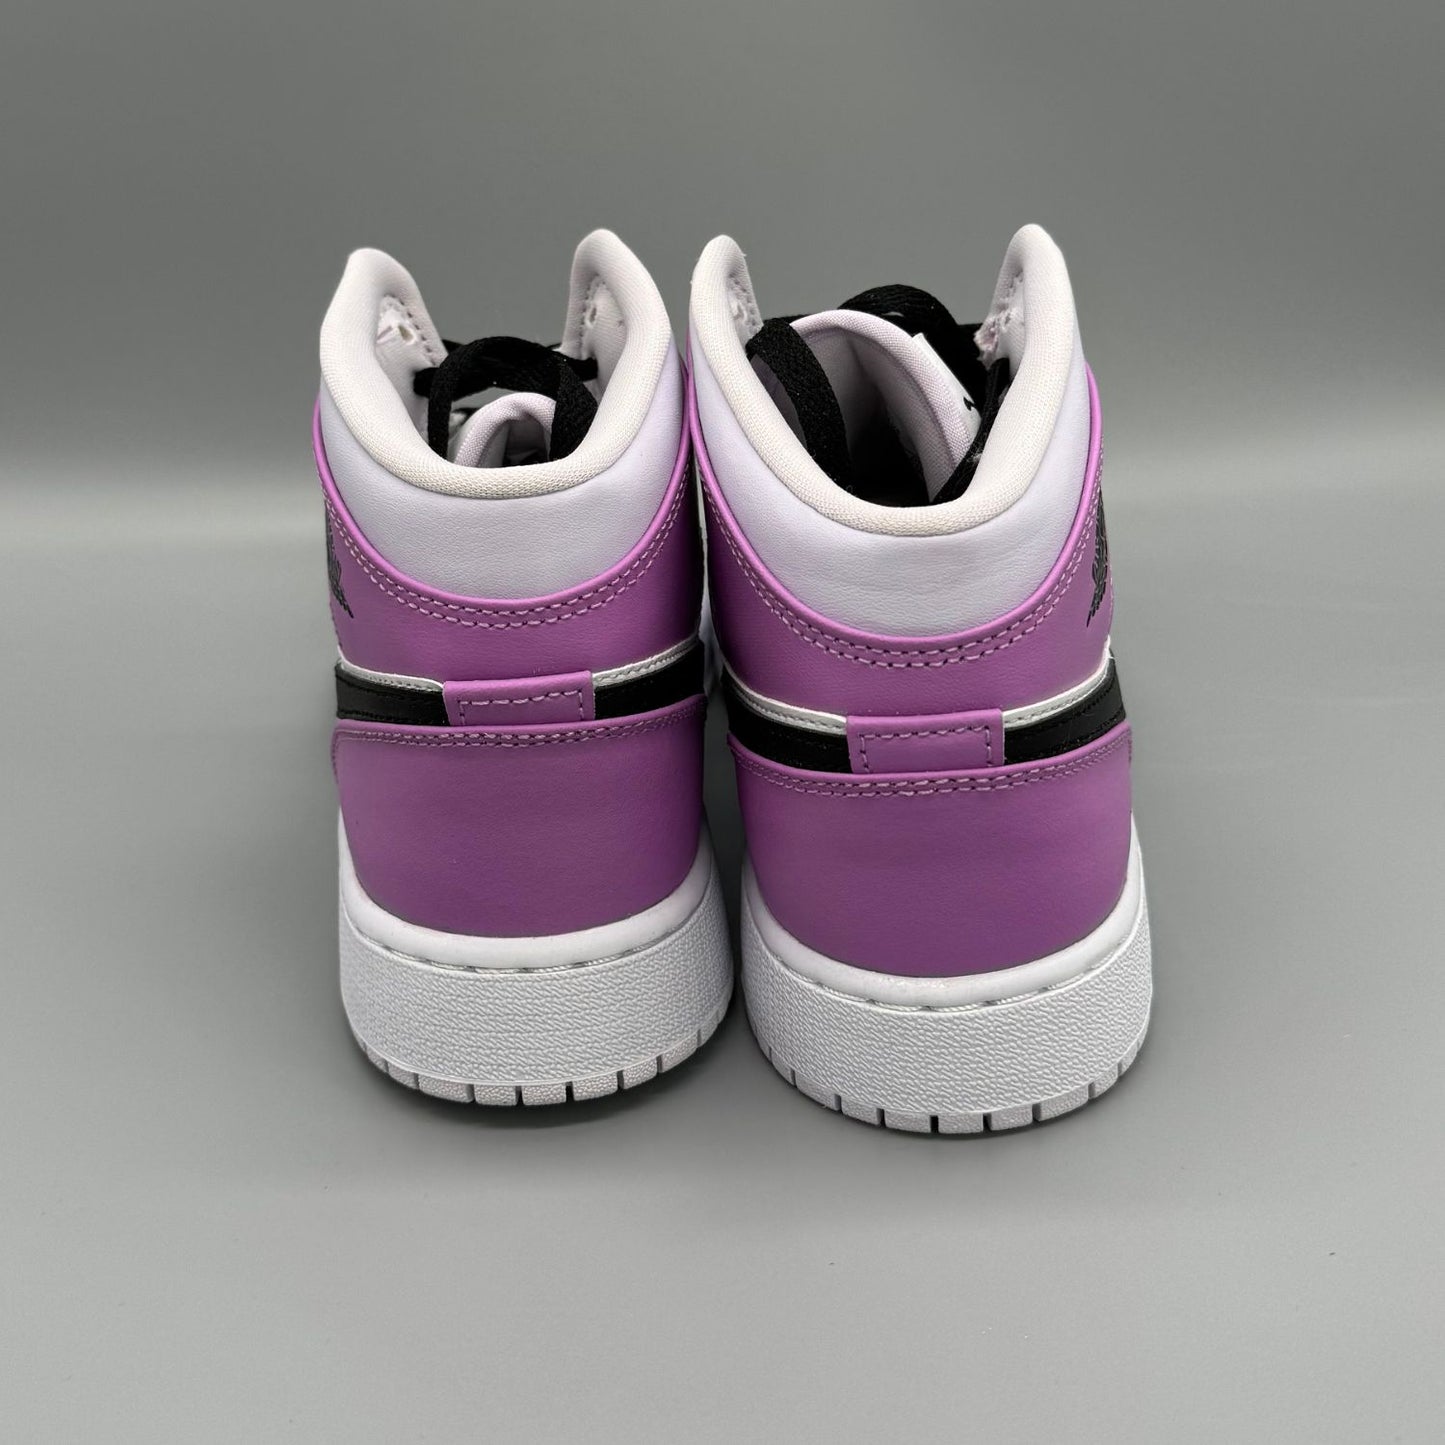 Air Jordan 1 Mid Barely Grape (GS) - Sneakerterritory; Sneaker Territory